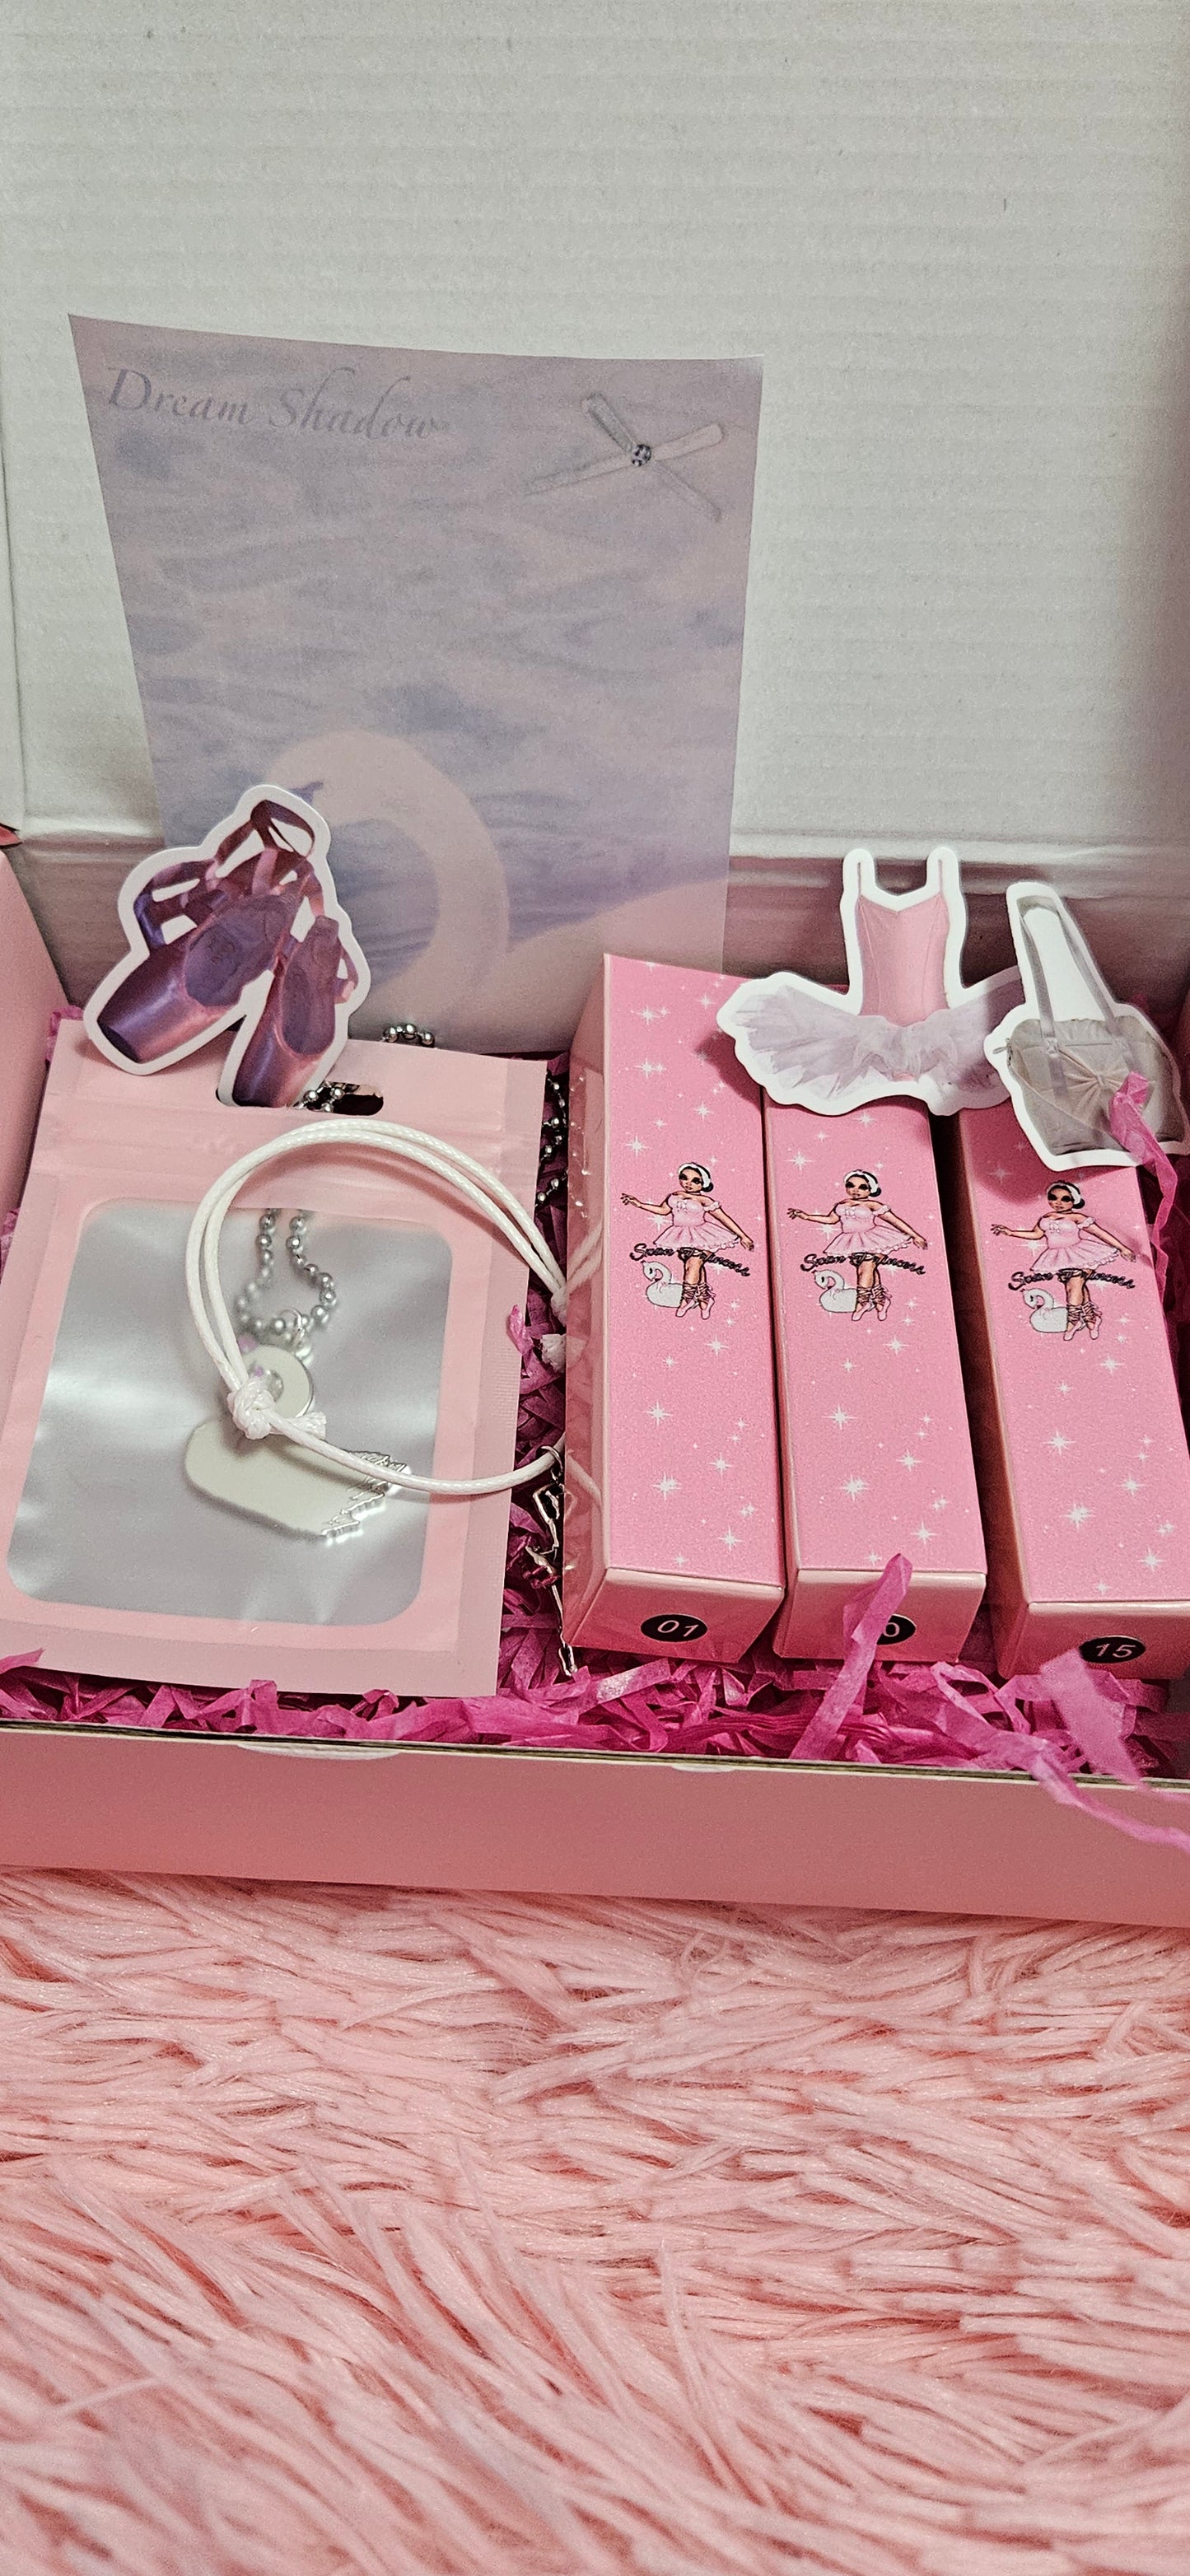 Swan Princess bundle box